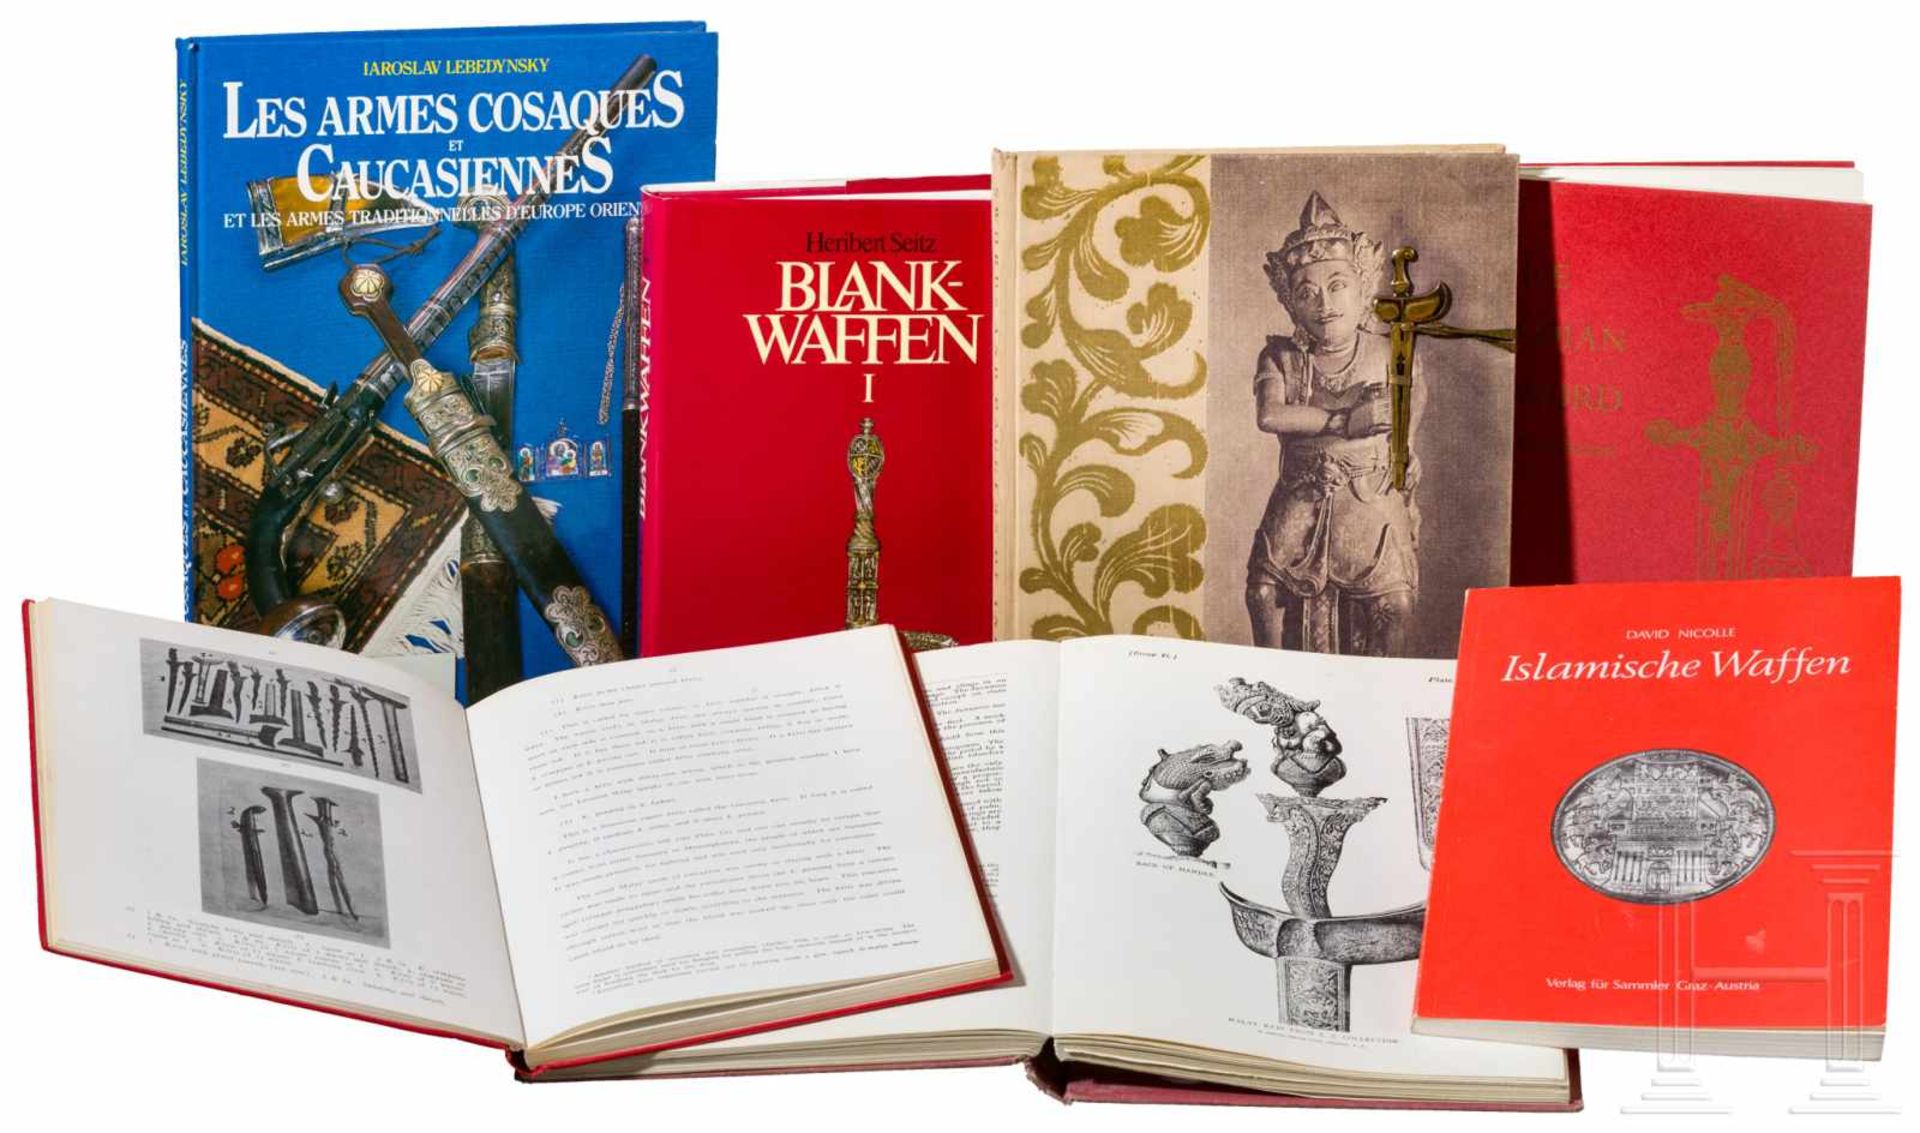 Sieben Bücher zum Thema BlankwaffenDarunter Lord Egerton of Tatton, "Indian and oriental Armour",